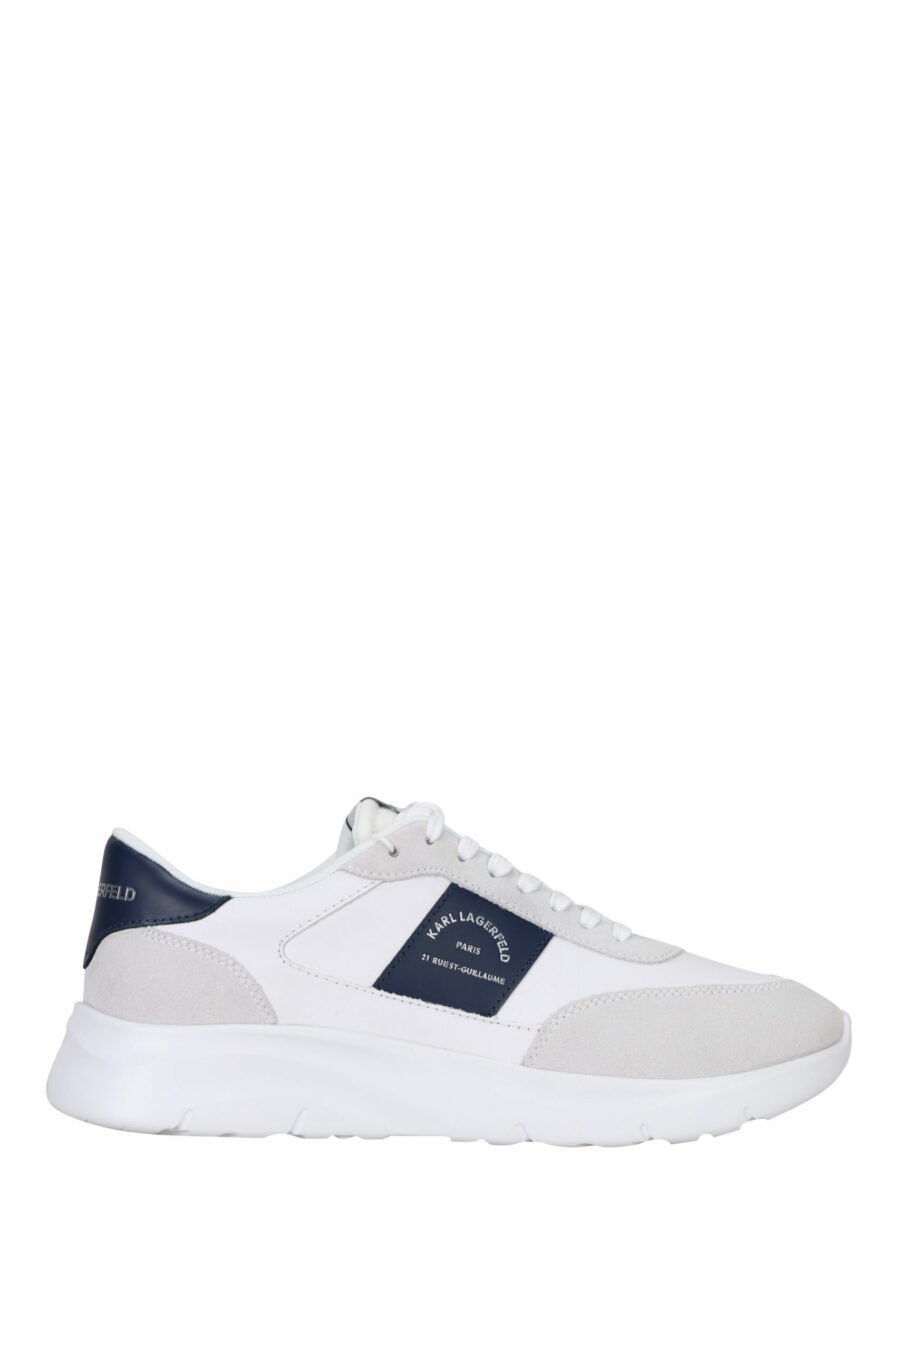 Zapatillas blancas mix "serger" con logo "rue st guillaume" en parche azul - 5059529365249 scaled